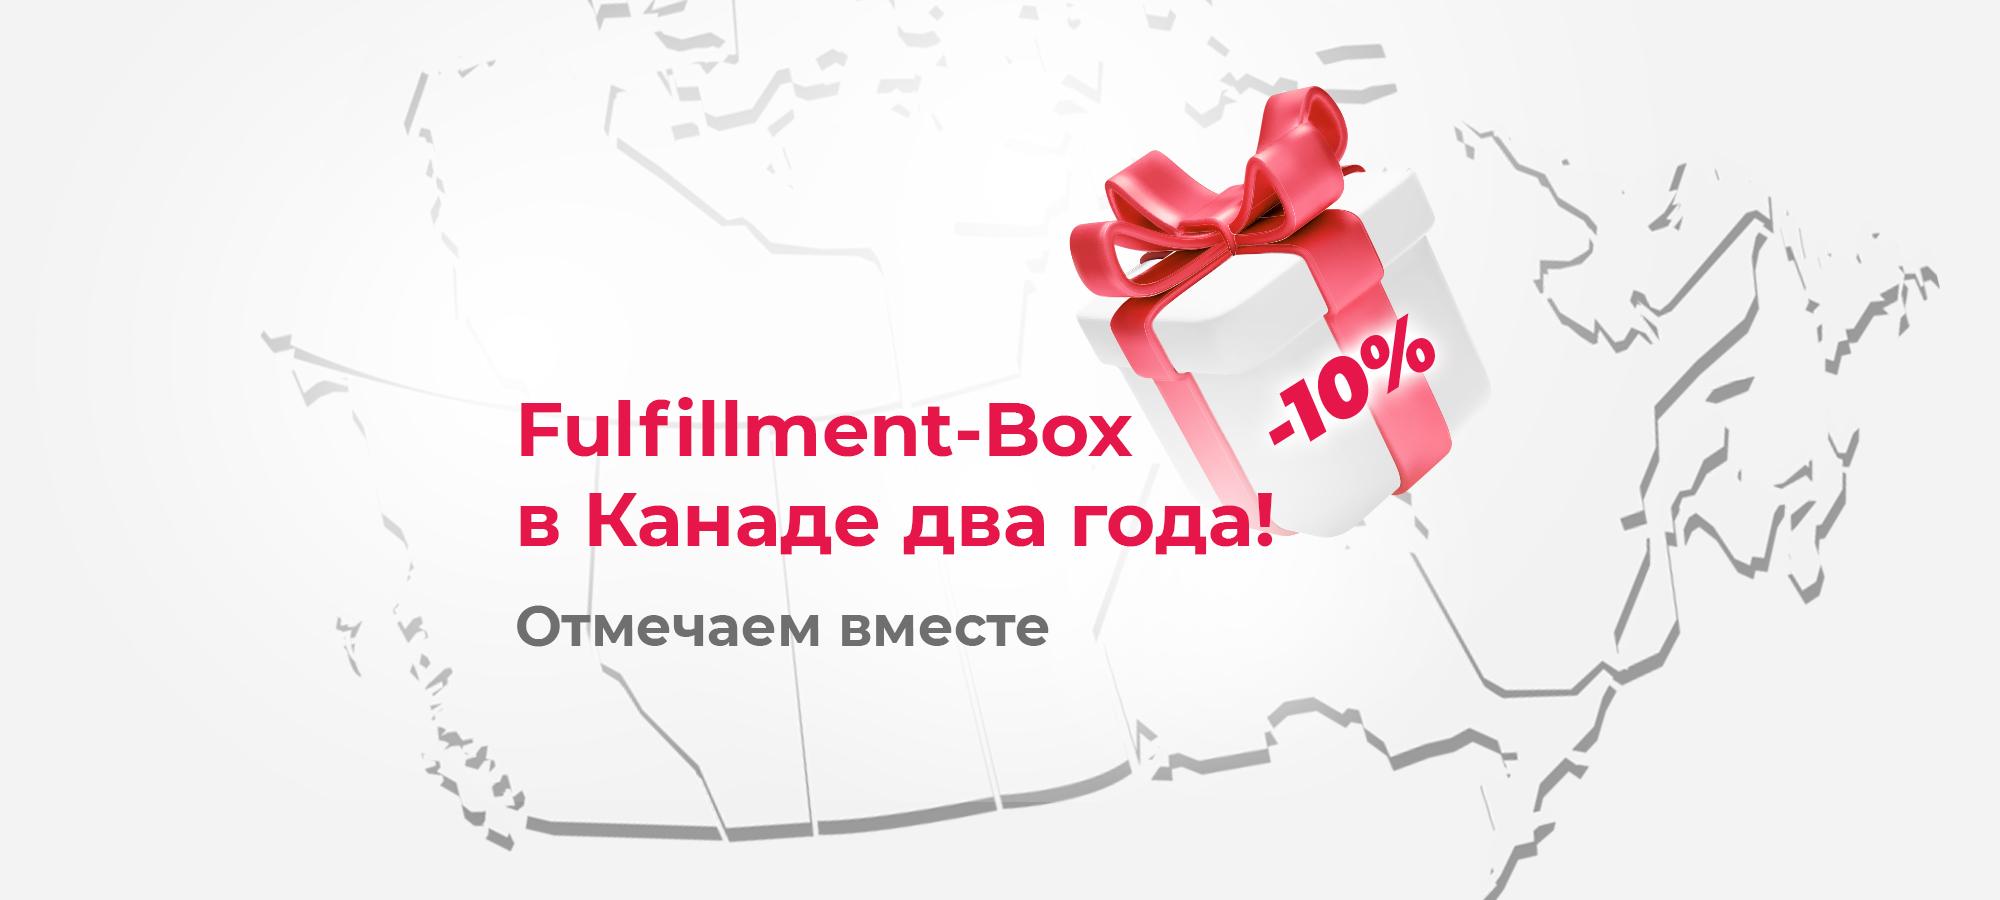 Fulfillment-Box в Канаде празднует два года работы. Скидка 10% для новых клиентов